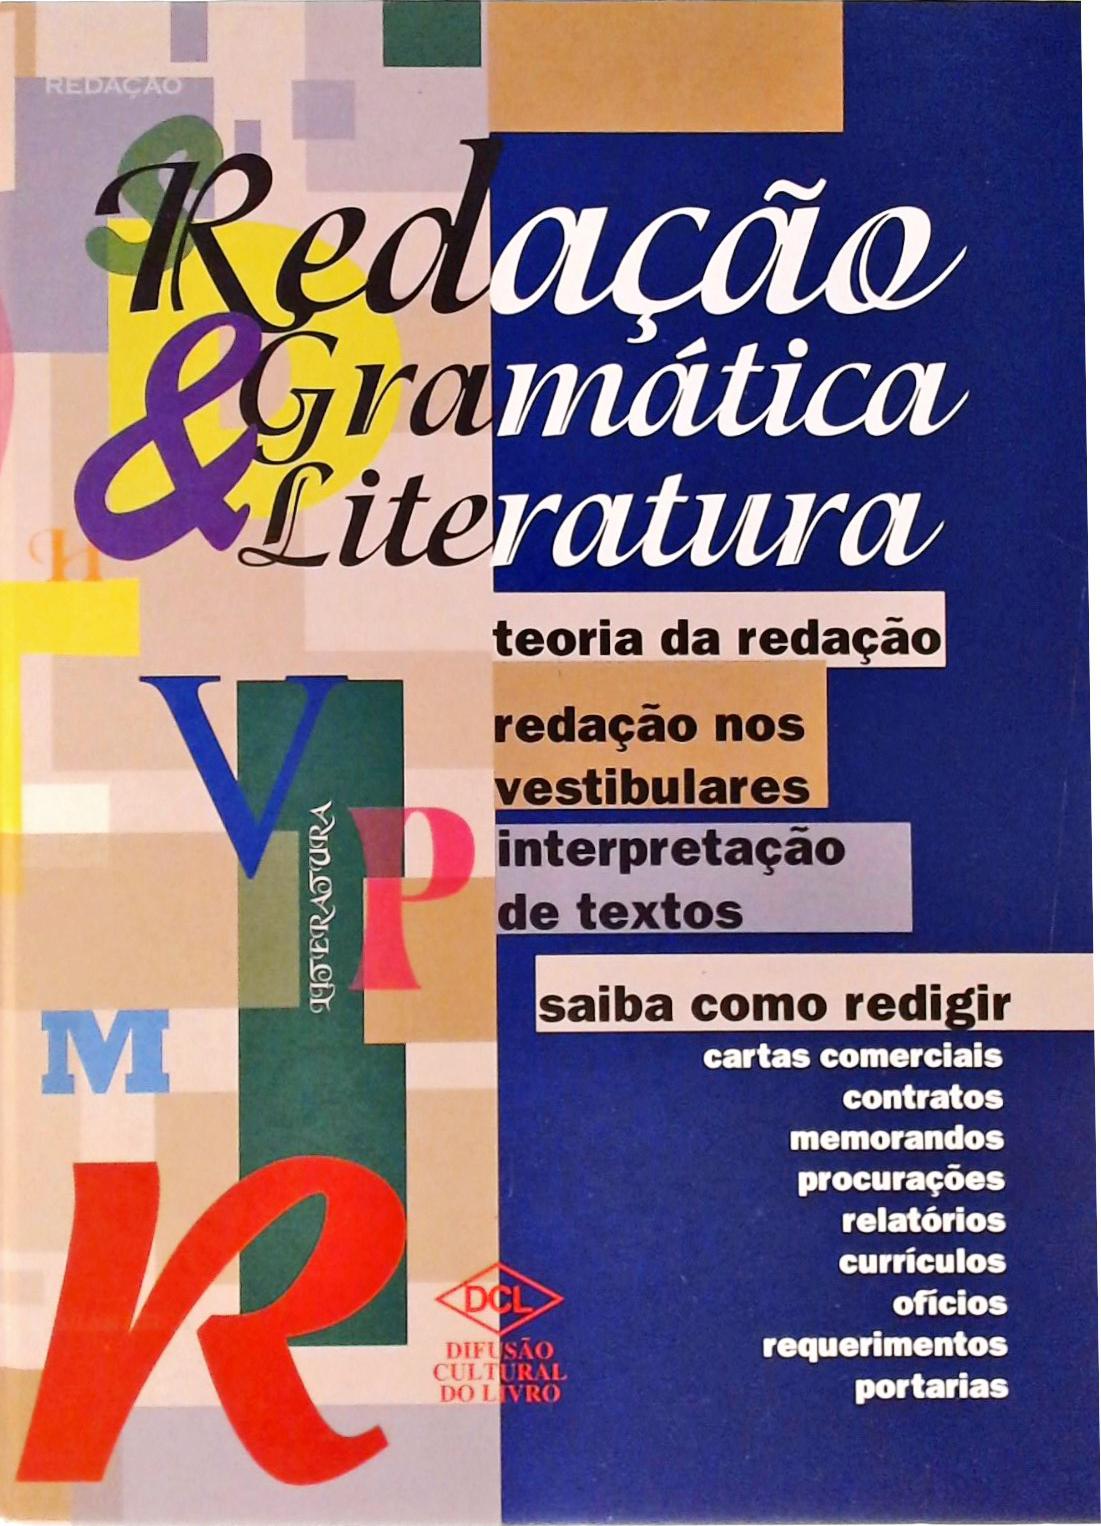 Redação: Gramática e Literatura (2002)